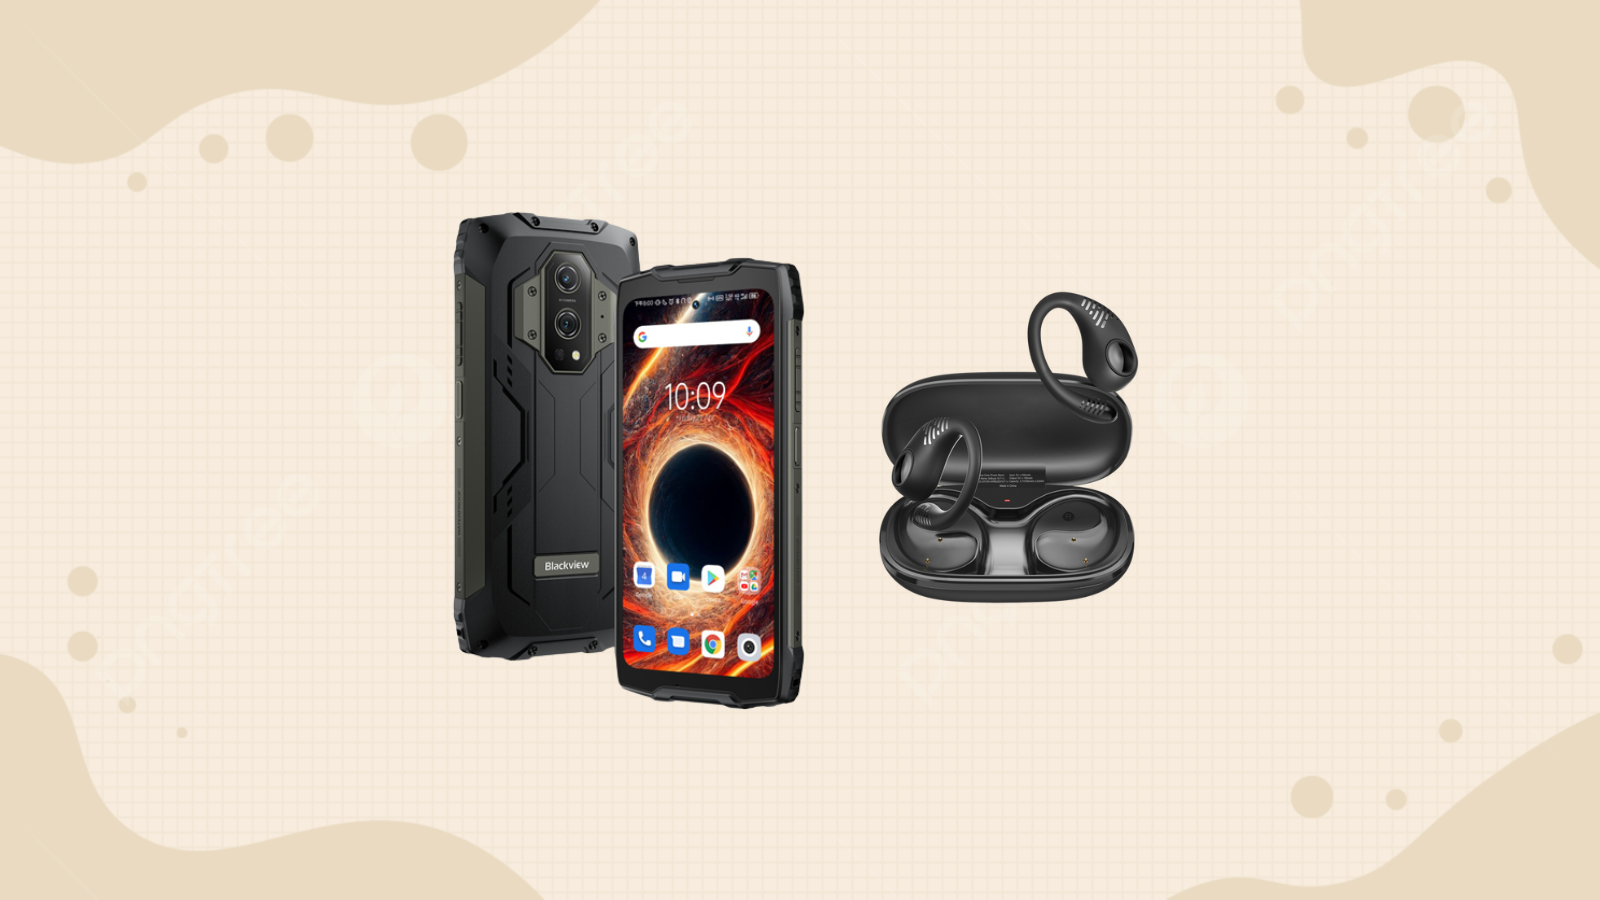 Blackview presenta el smartphone robusto más innovador BV9300 y los  auriculares de gama alta AirBuds 10 Pro